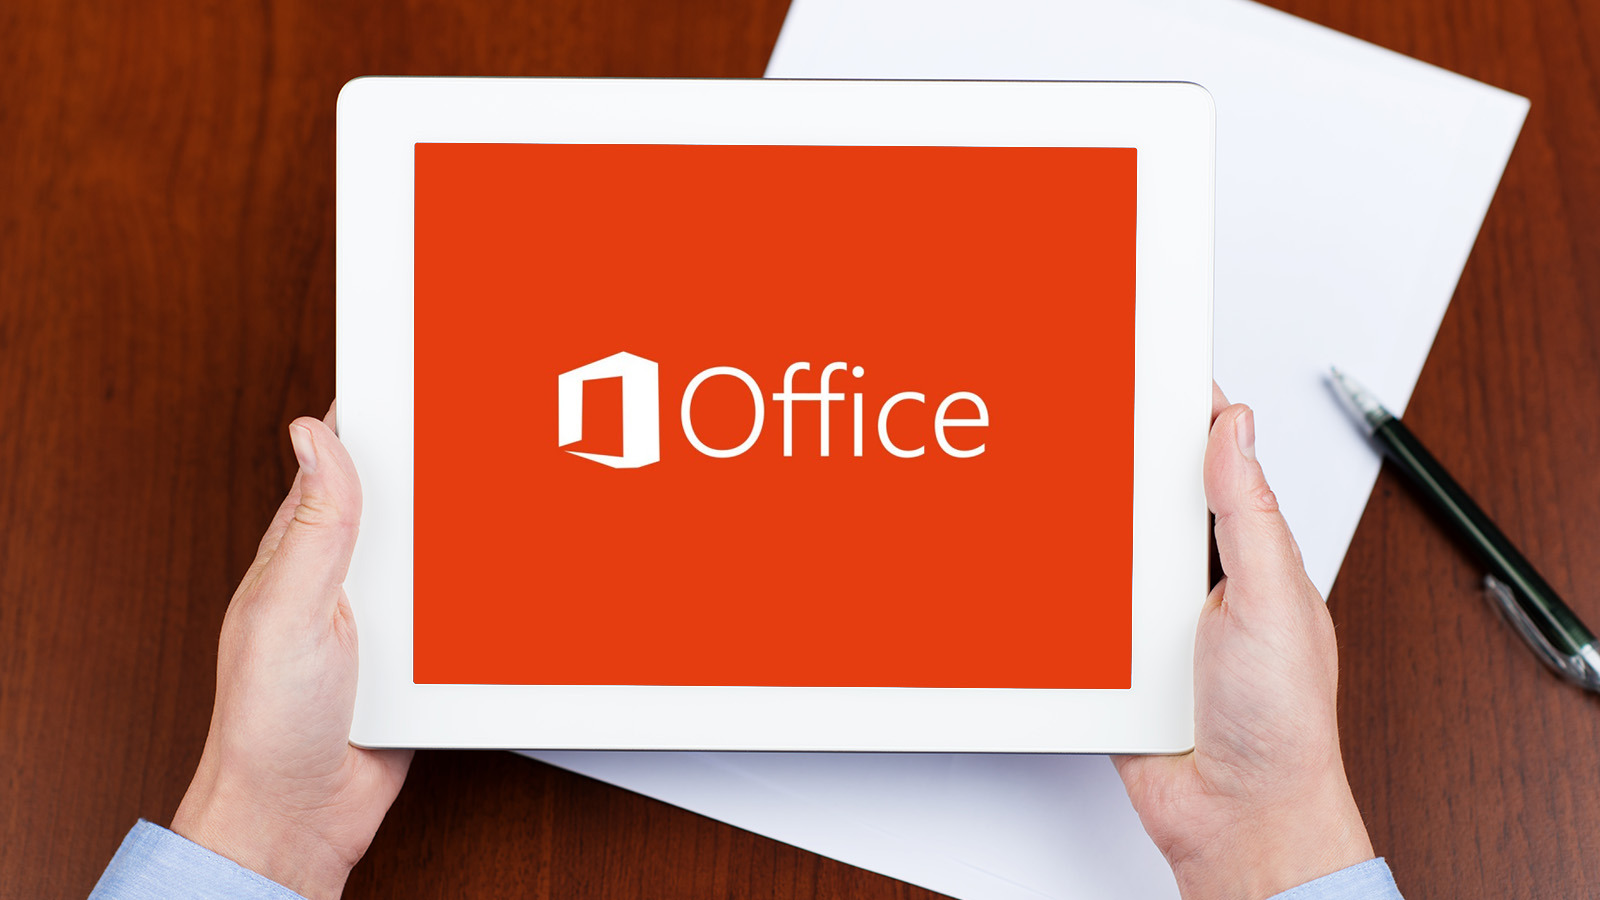 Microsoft oferece 1 ano de Office 365 Pessoal. Saiba como!